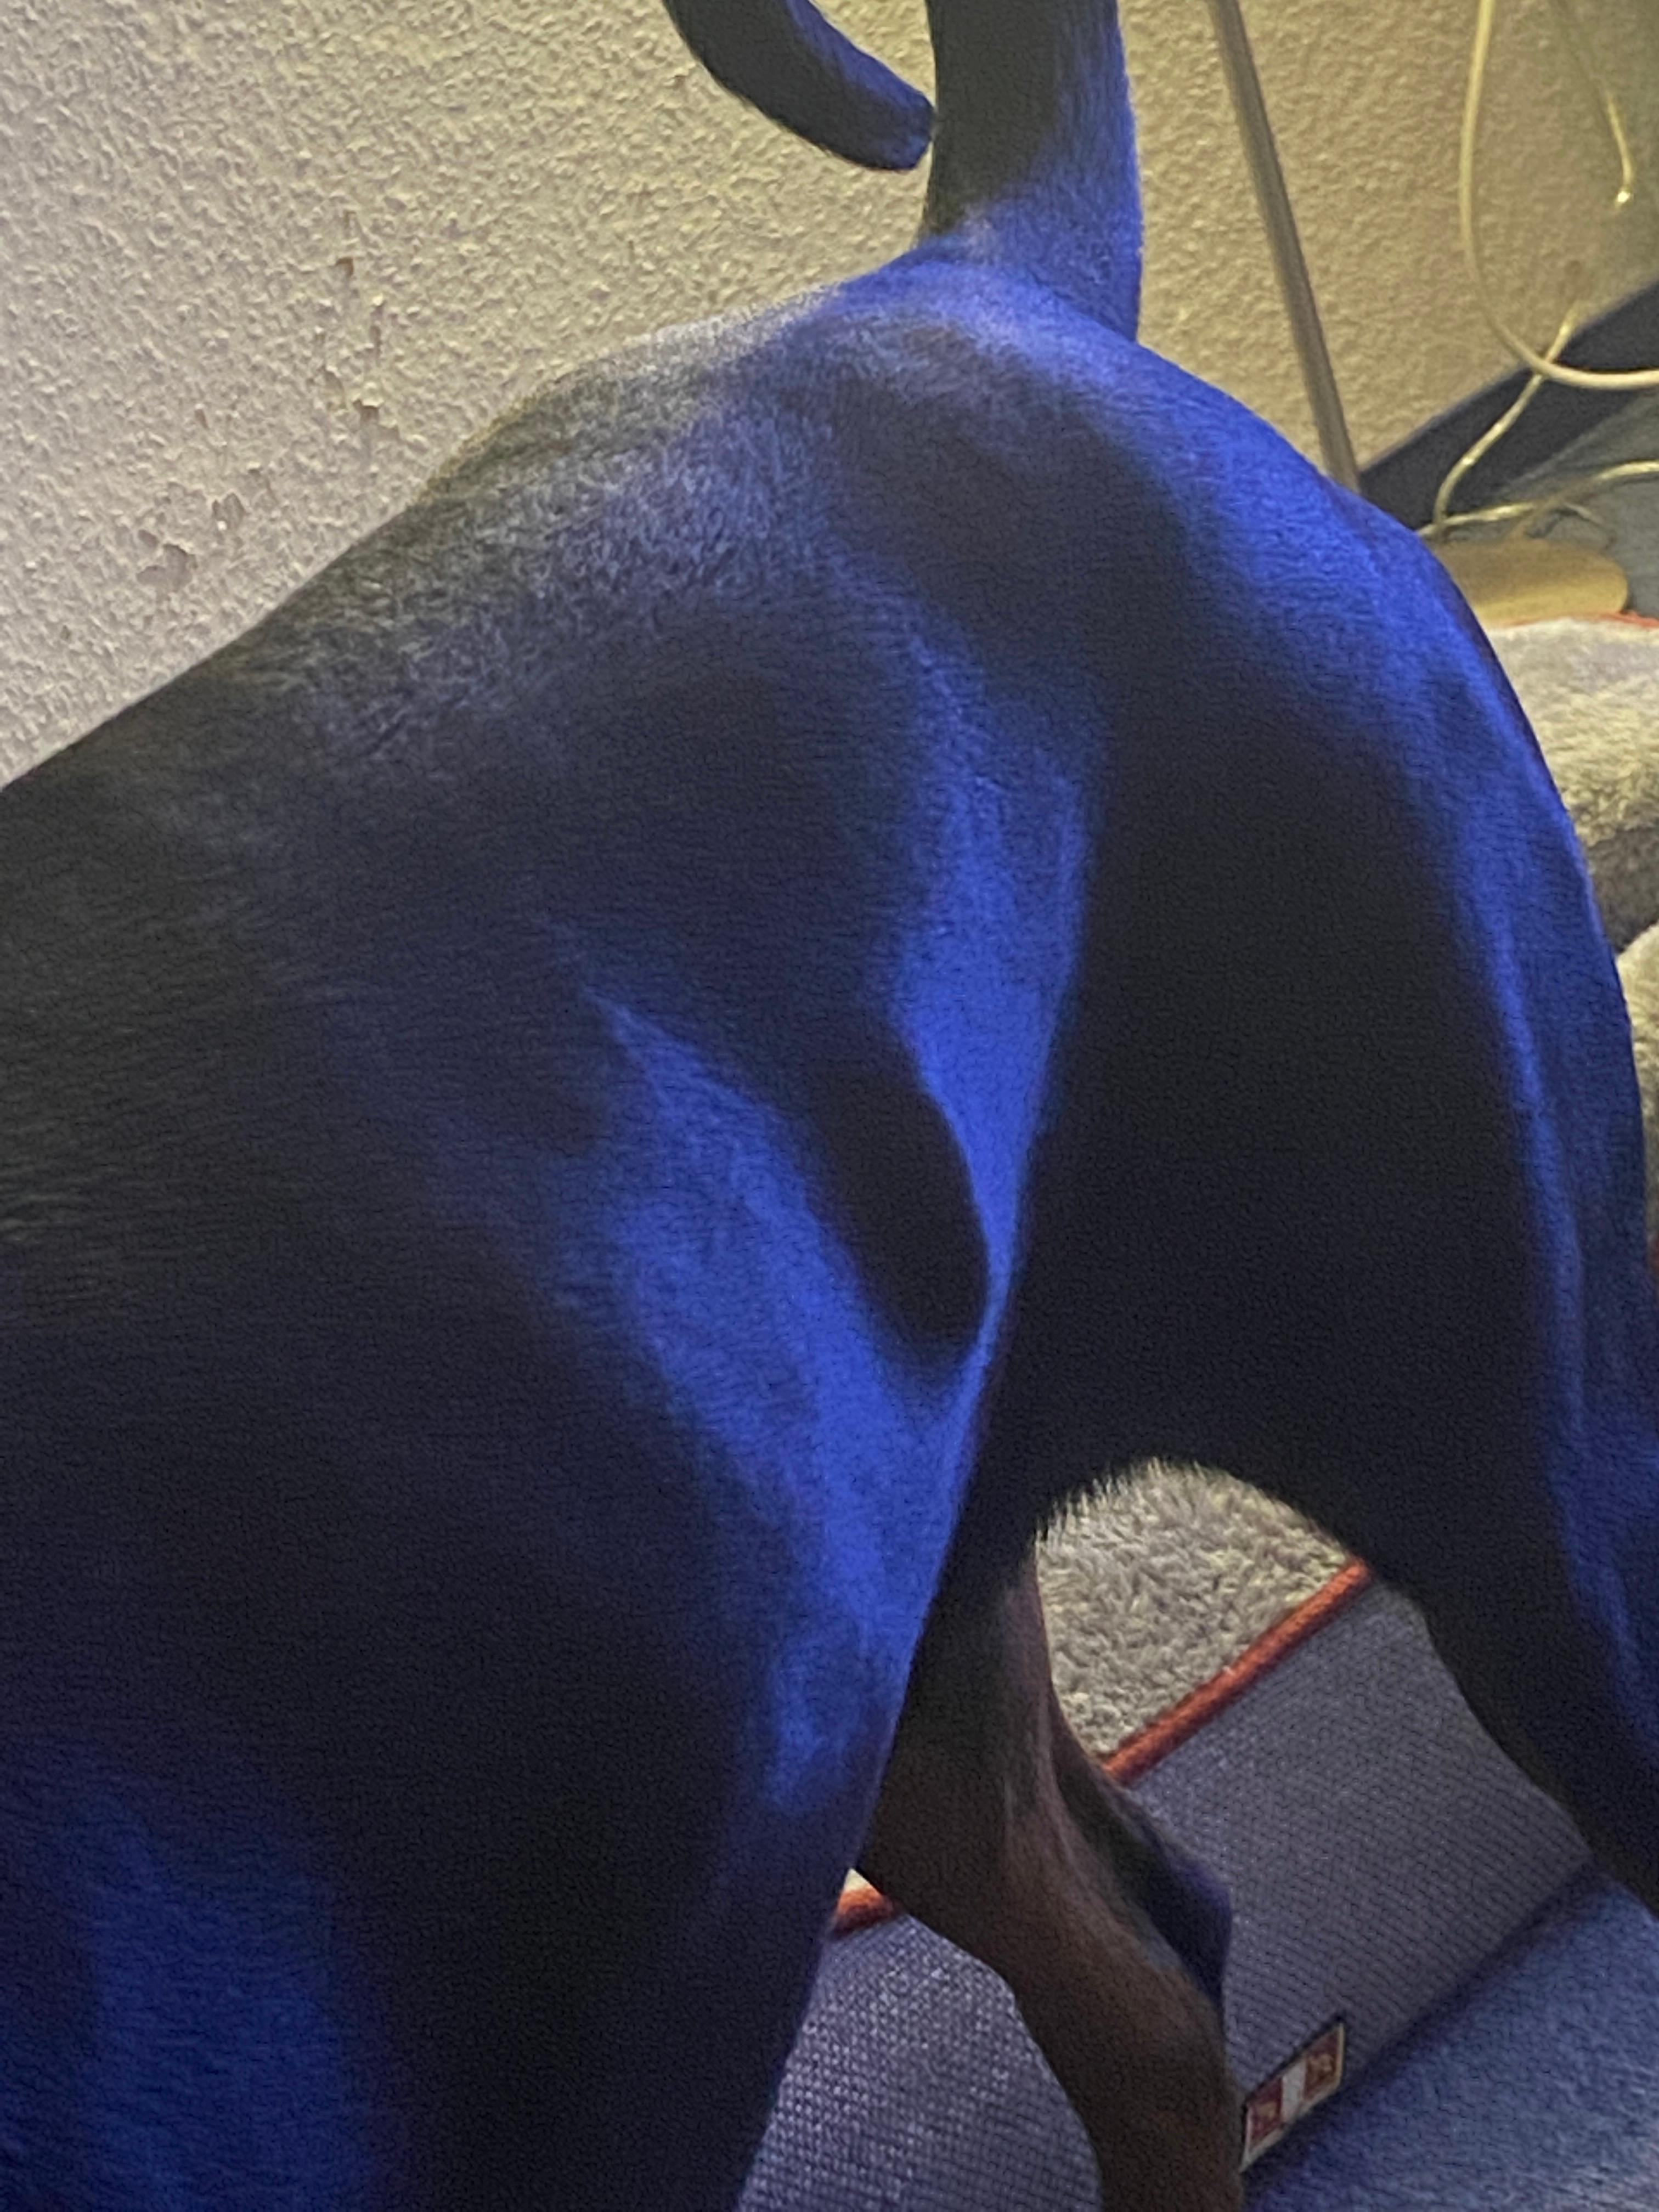 Knubbel auf den linken Rippen bei meinem Hund? (Gesundheit)